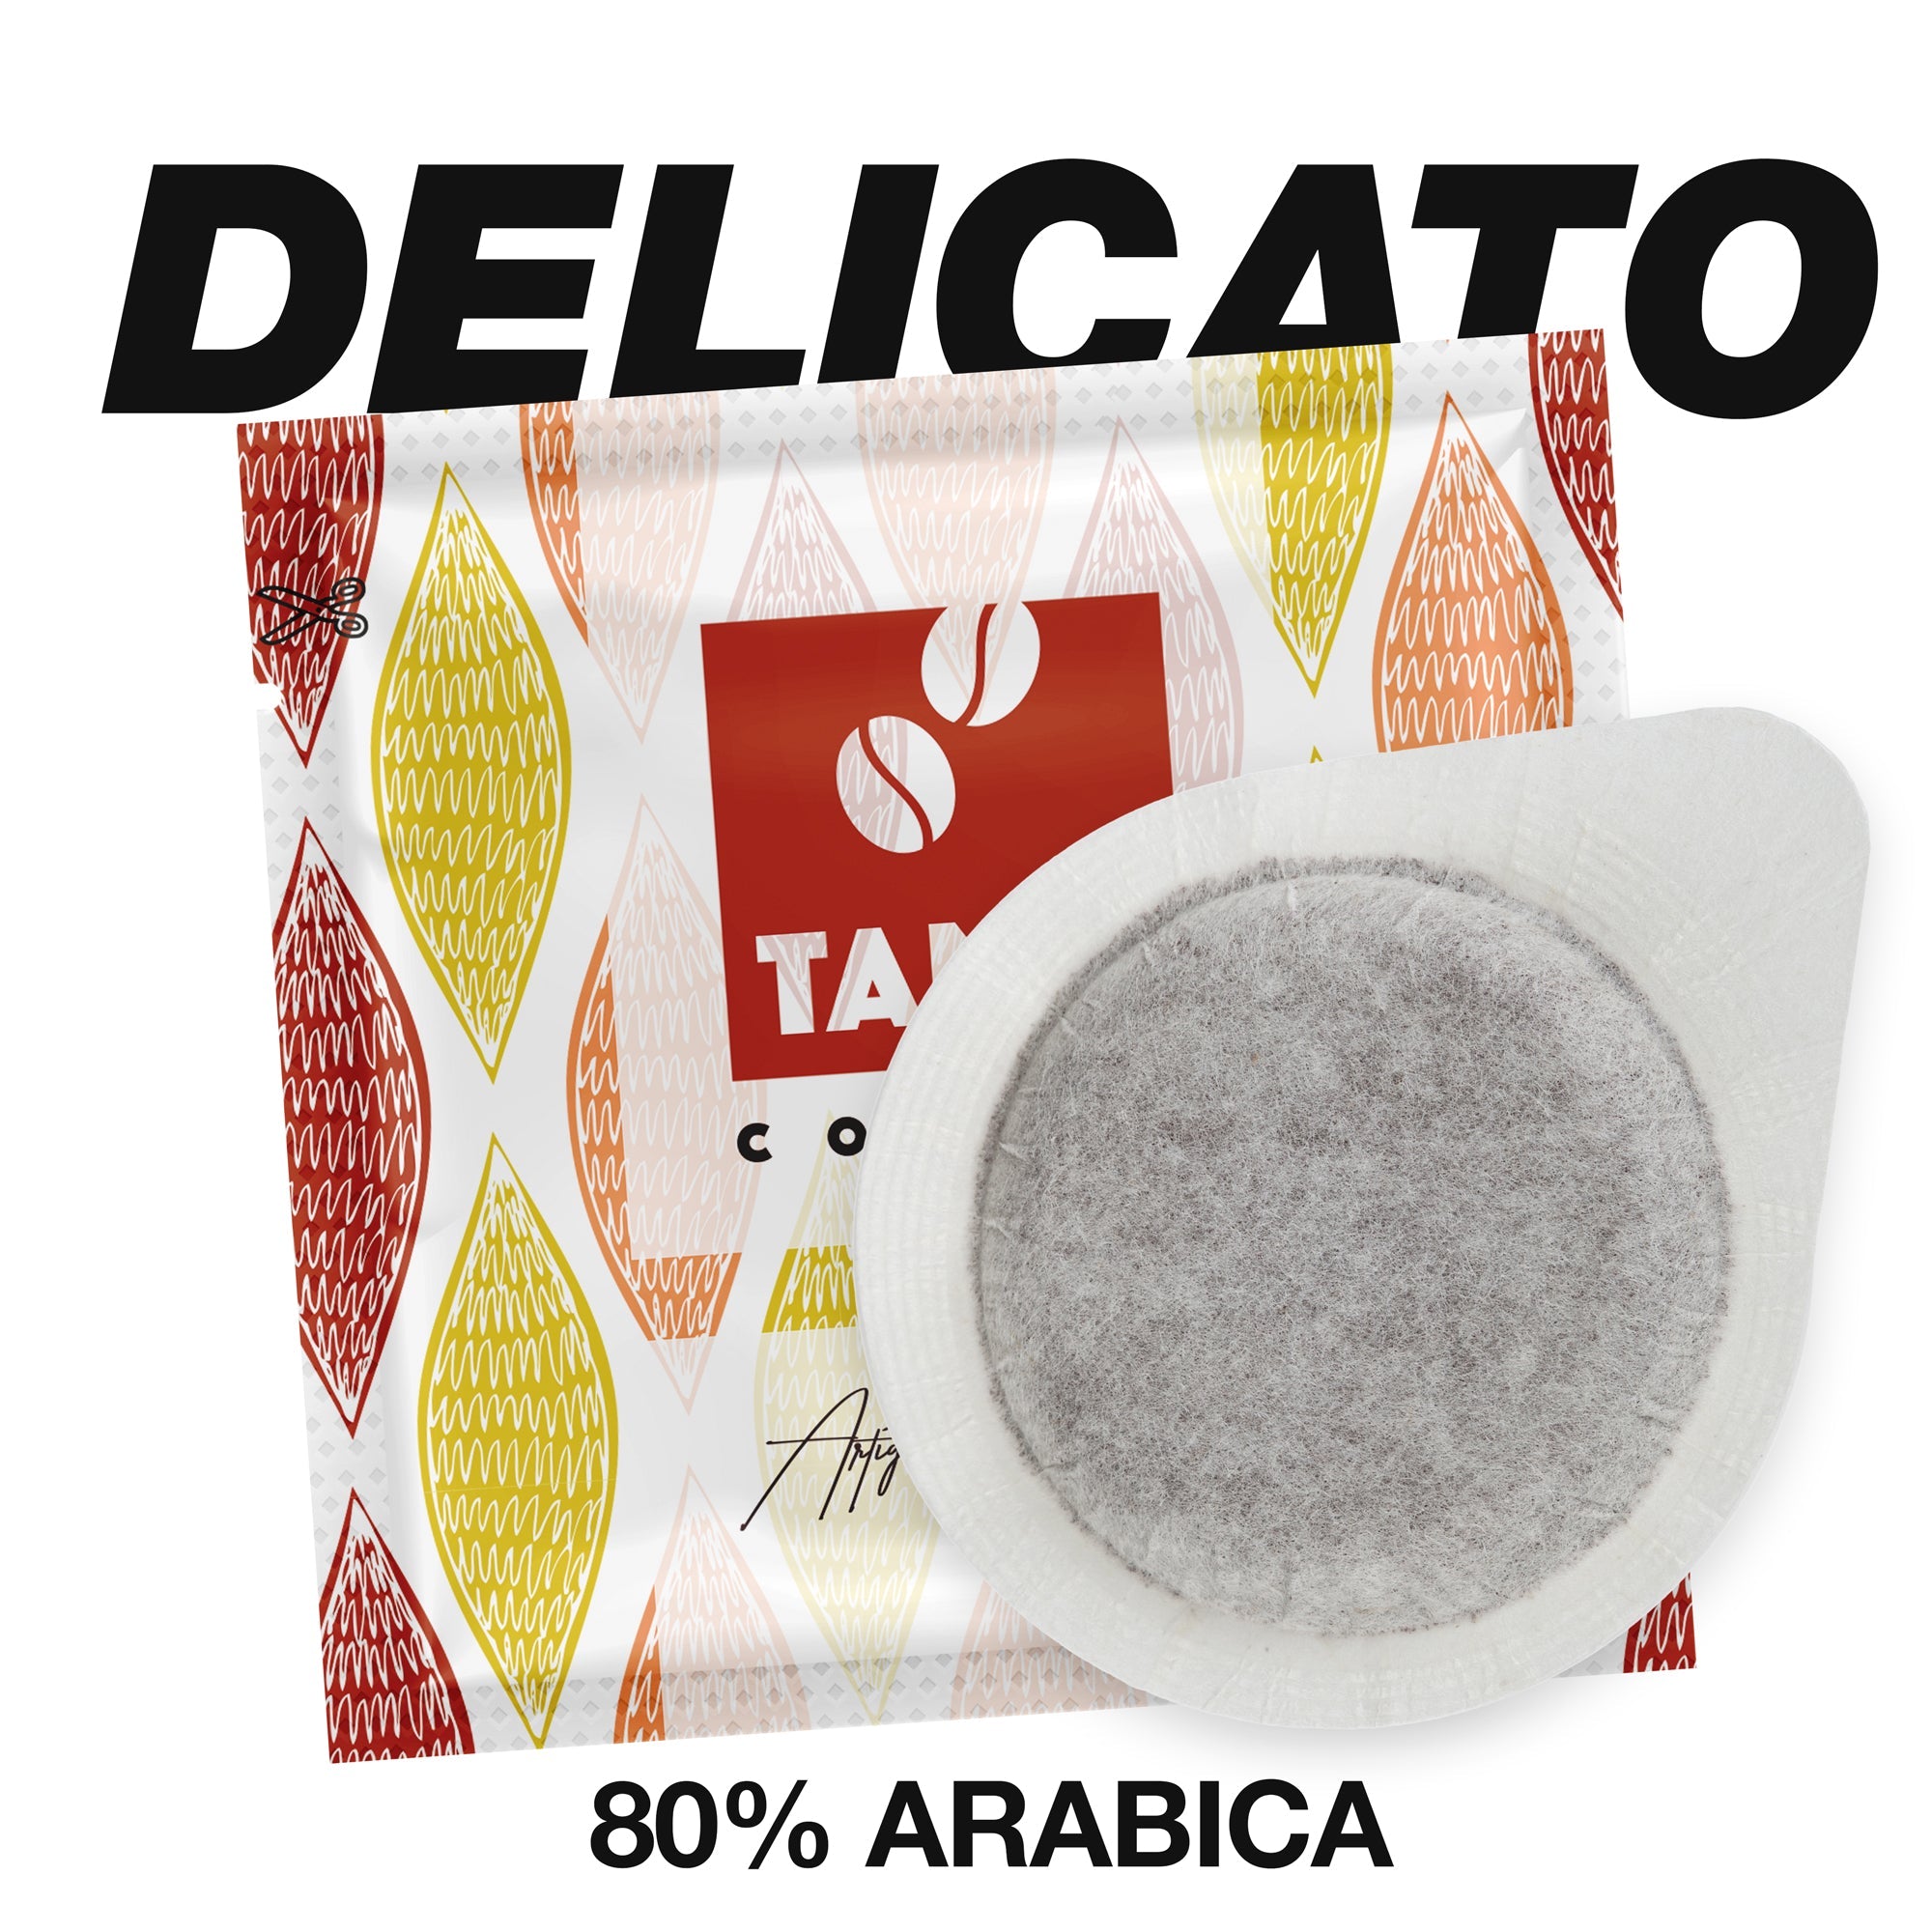 Cialde E.S.E. Artigianali 80% arabica - TAMA caffè